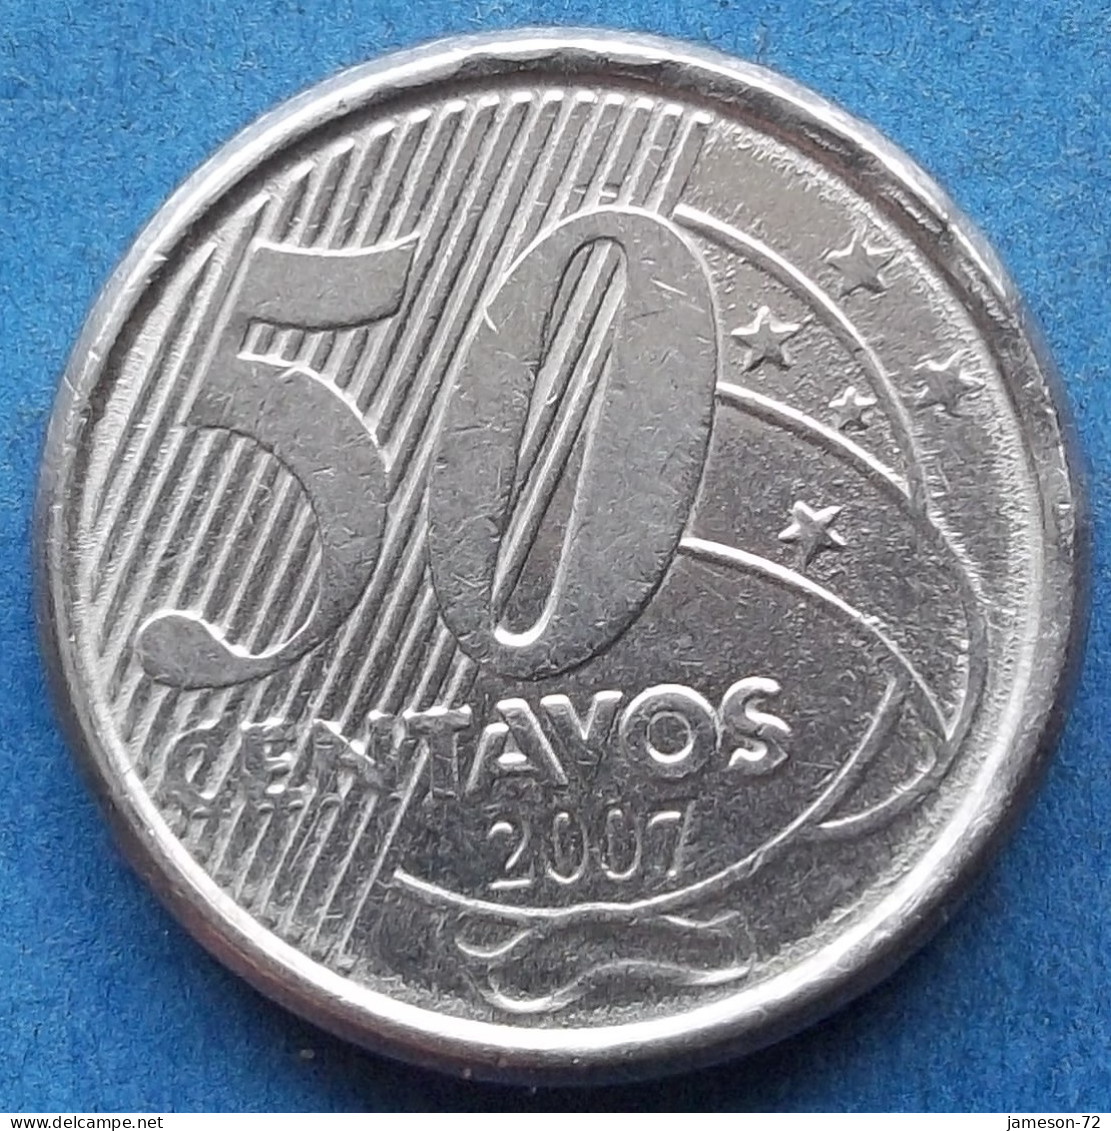 BRAZIL - 50 Centavos 2007 "Baron Of Rio Branco" KM# 651a Monetary Reform (1994) - Edelweiss Coins - Brasil